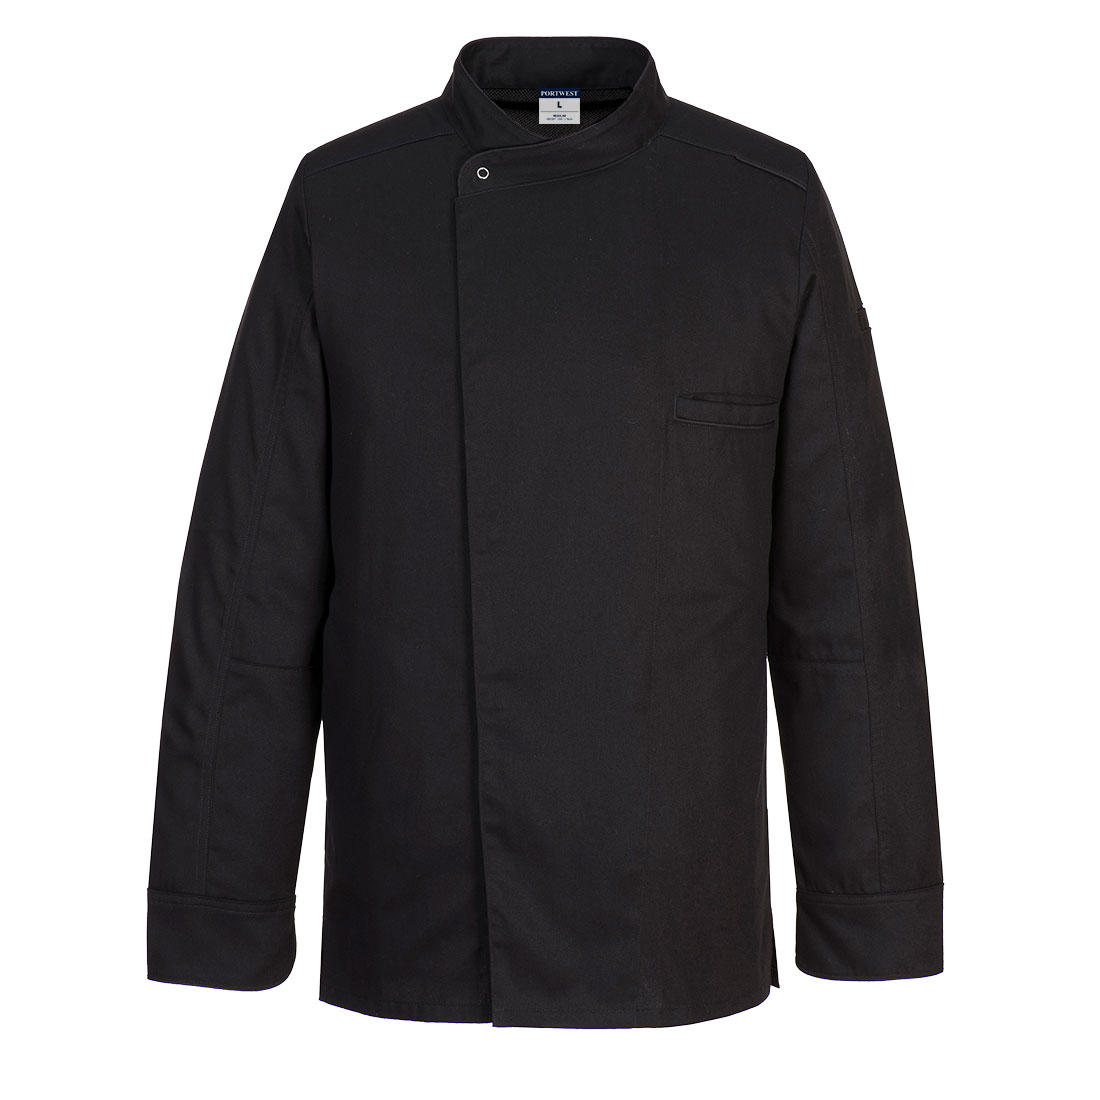 Surrey Chefs Jacket L/S - Black